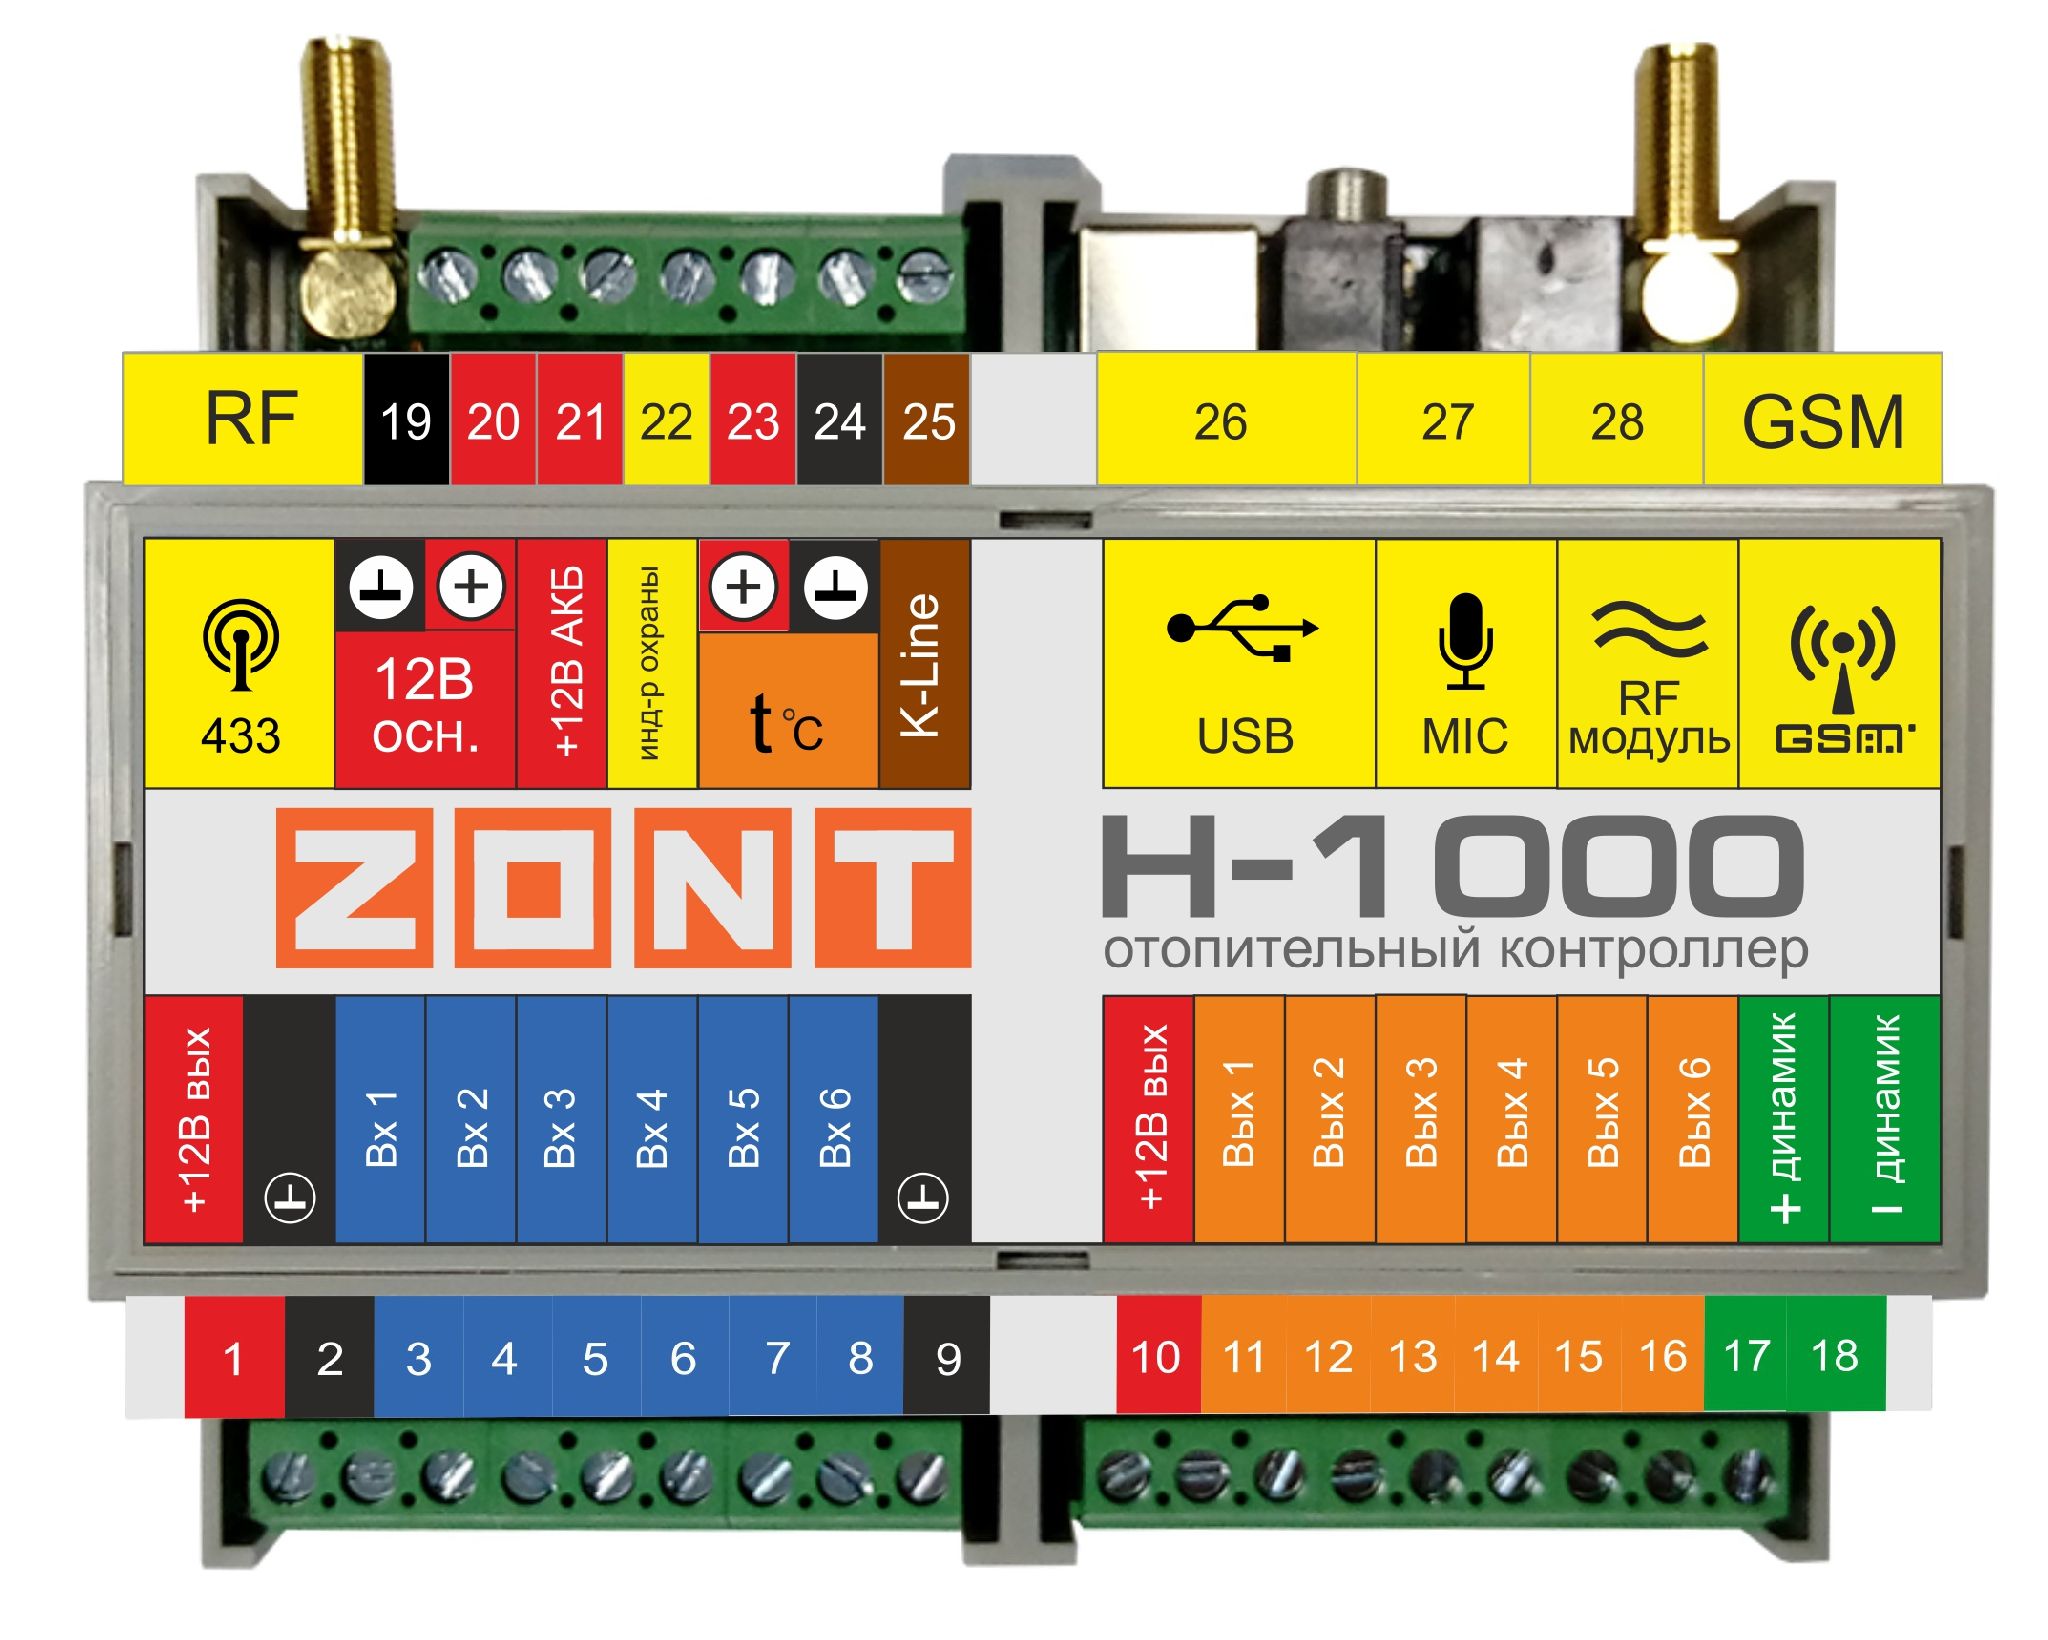 Zont h купить. Отопительный контроллер Zont h-1000. Контроллер Zont h1000 + схема. Контроллер Zont h1000+ Pro. Универсальный контроллер Zont h2000+.